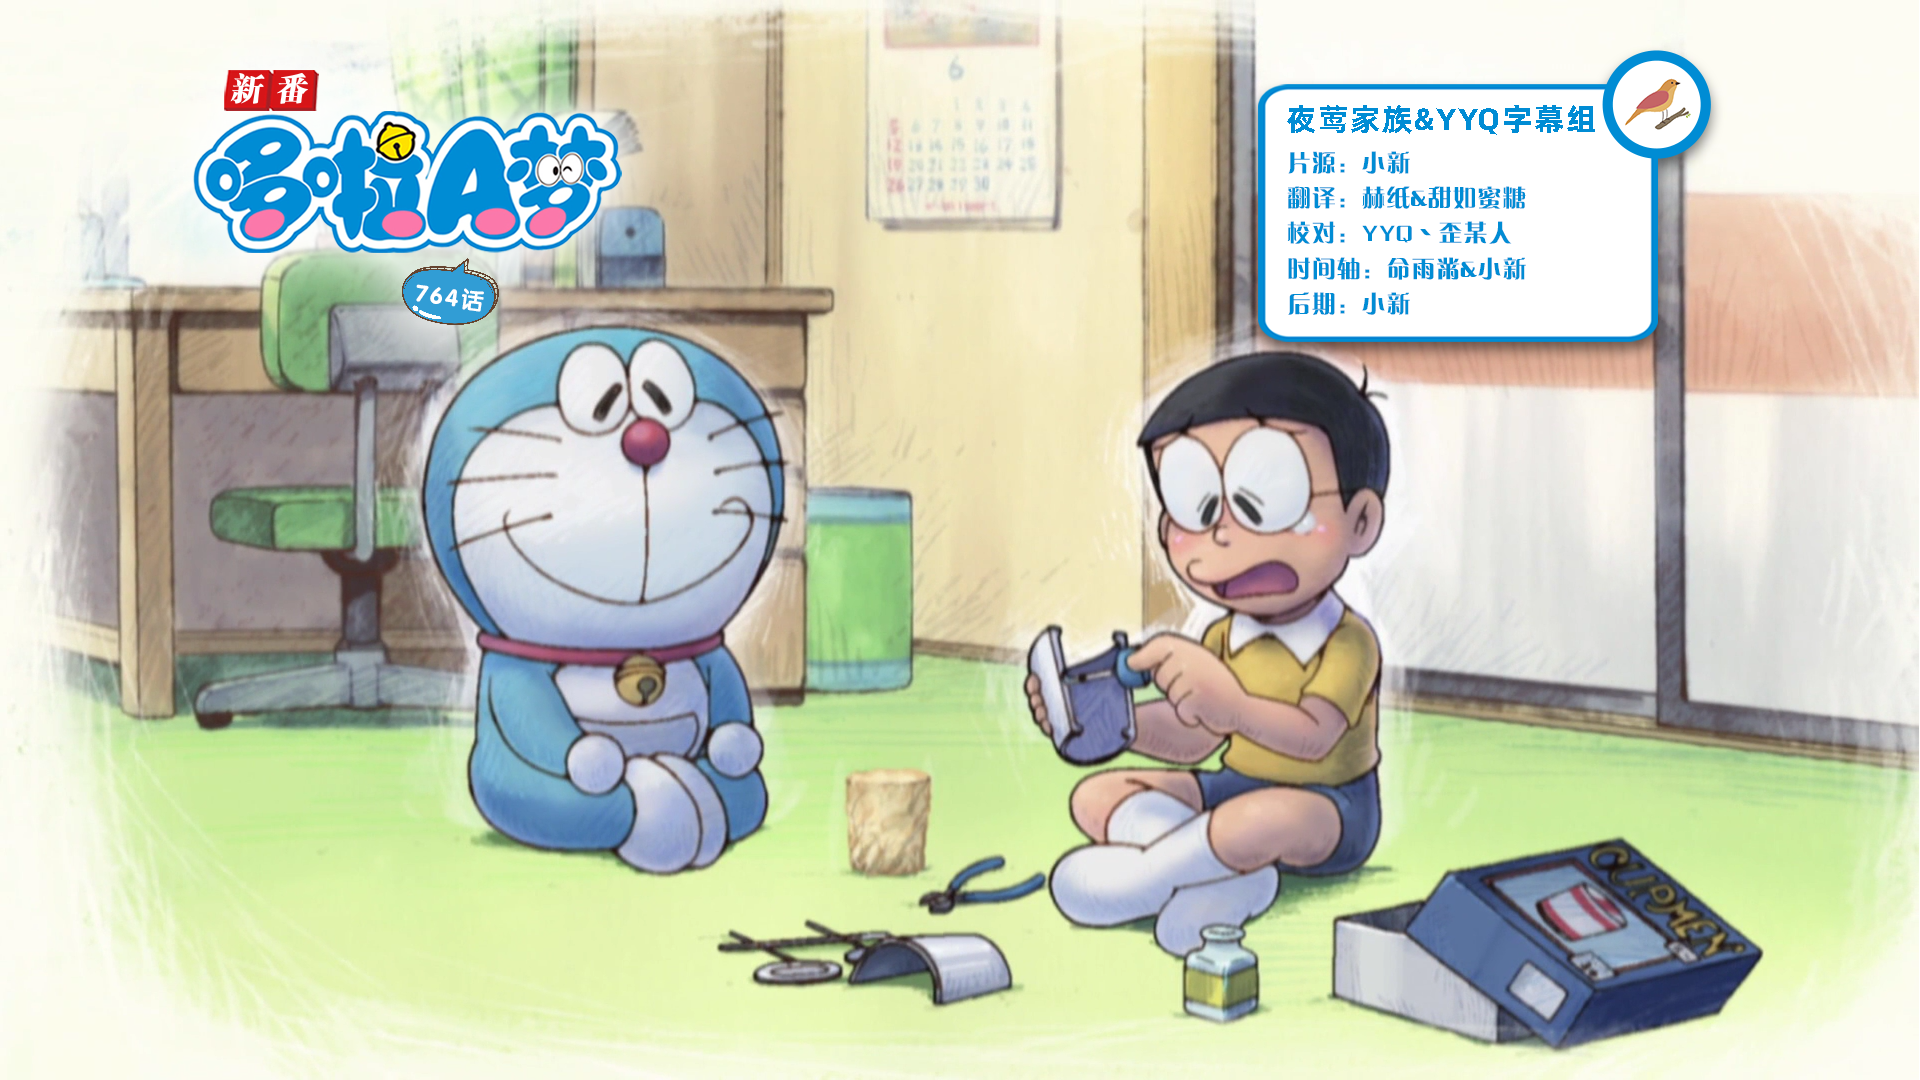 [夜莺家族&YYQ字幕组]New Doraemon 哆啦A梦新番[764][2023.06.24][AVC][1080P][GB_JP]插图icecomic动漫-云之彼端,约定的地方(´･ᴗ･`)2